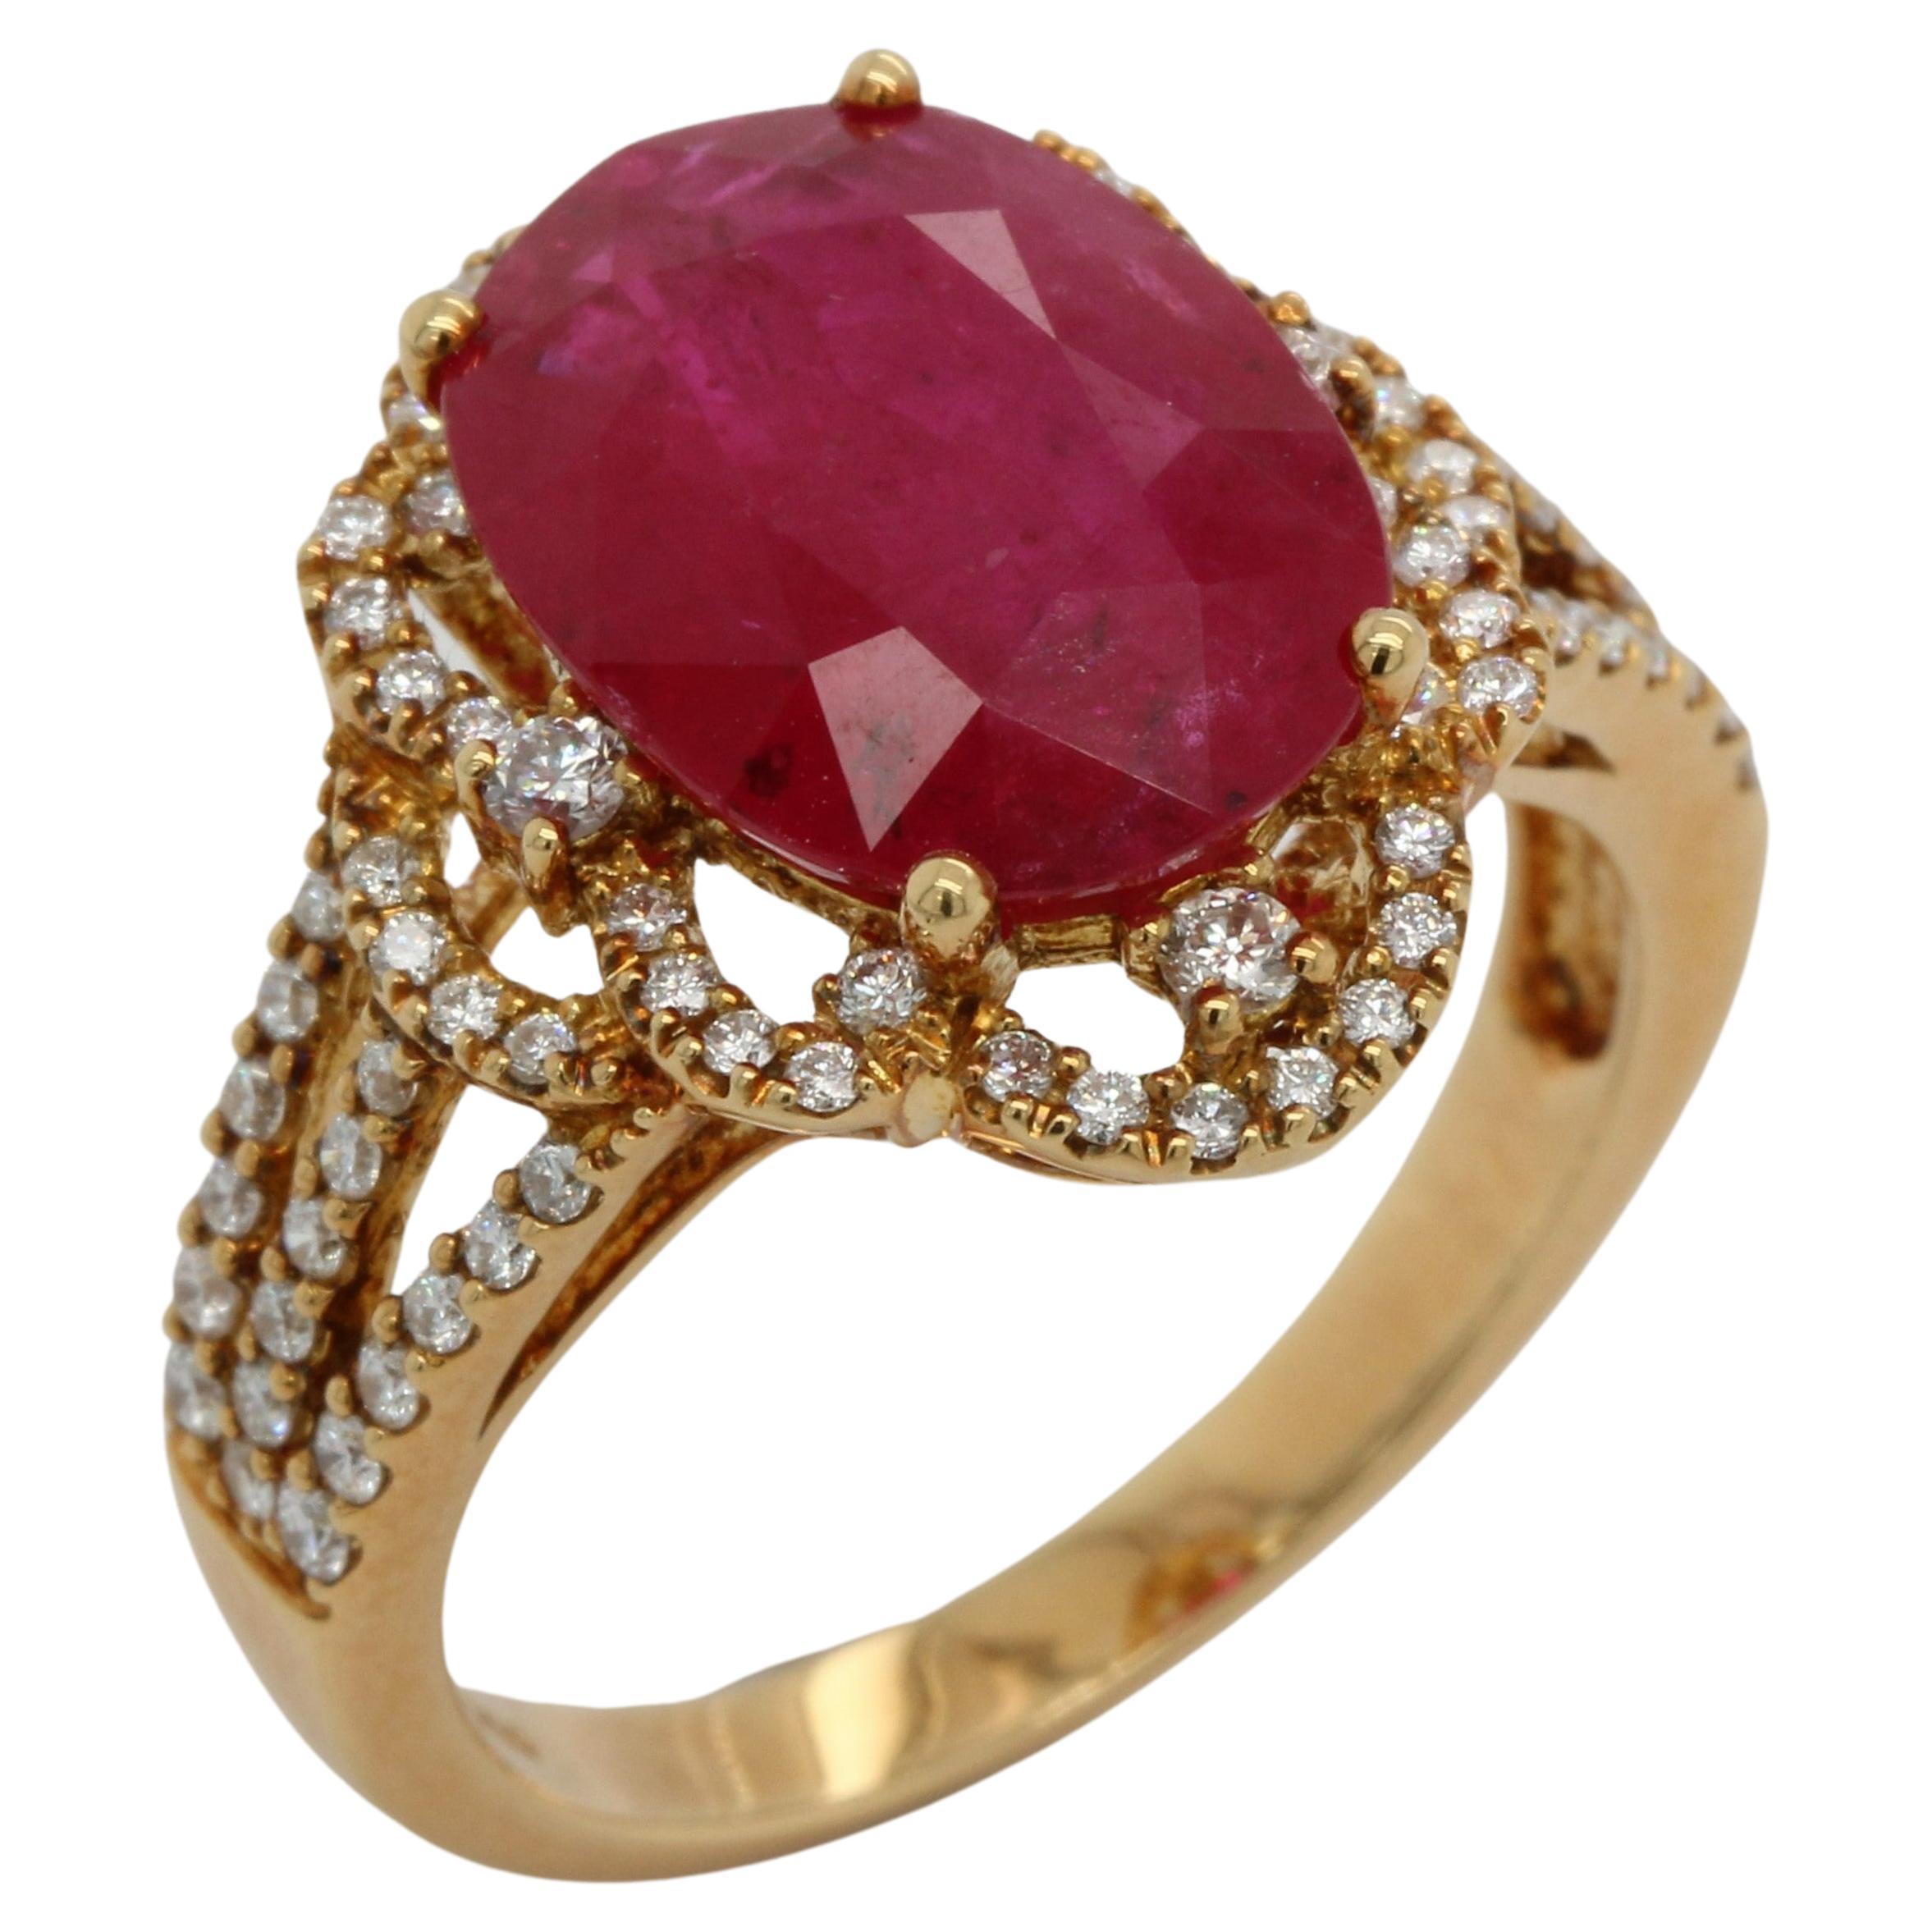 5.19 Carat Ruby And Diamond Ring In 18 Karat Gold